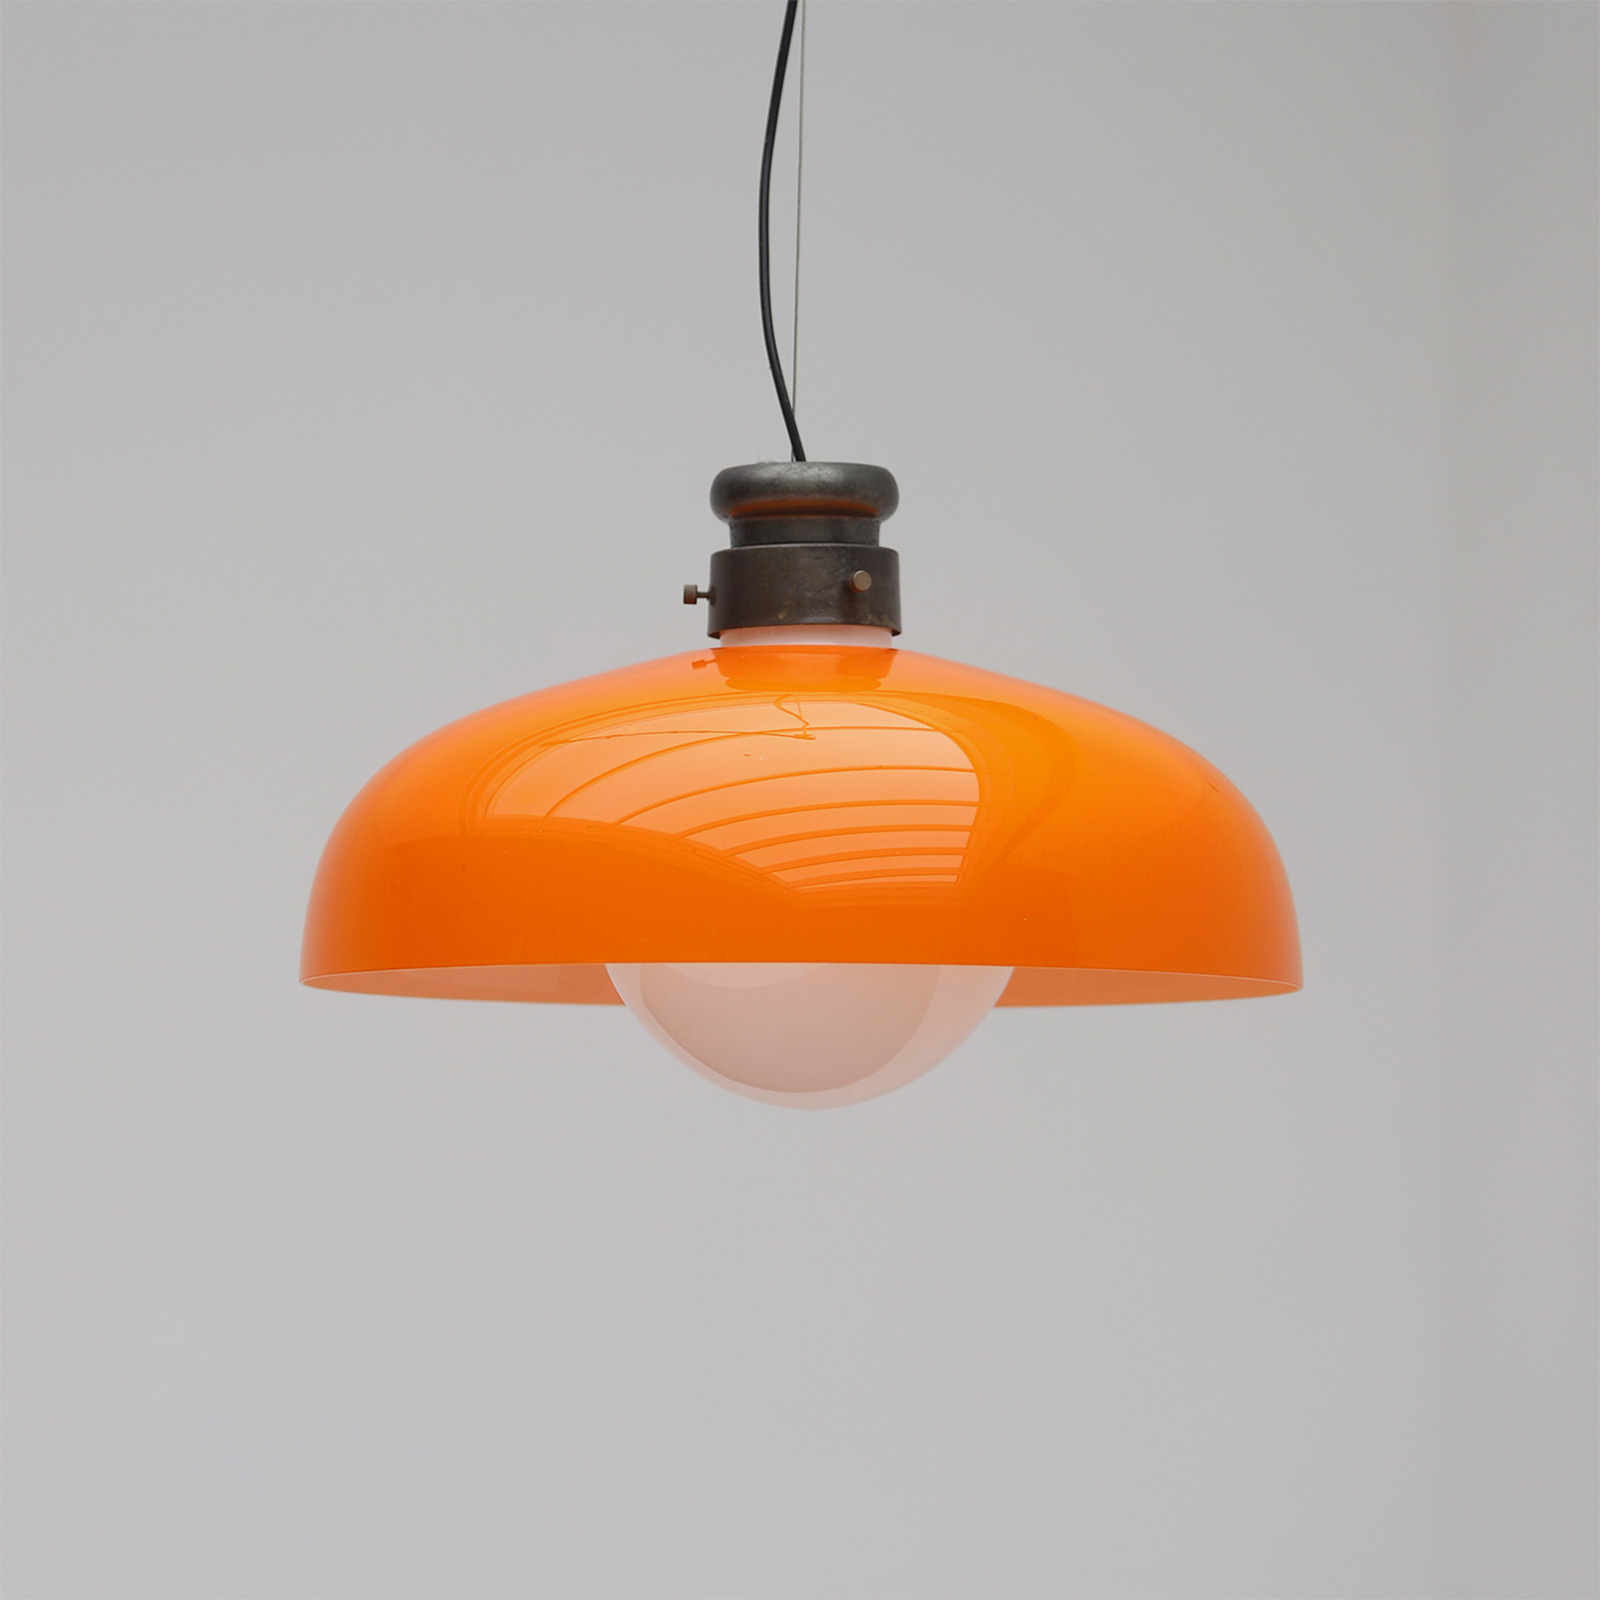 Pendant Lamp by Alessandro Pianon for Vistosi